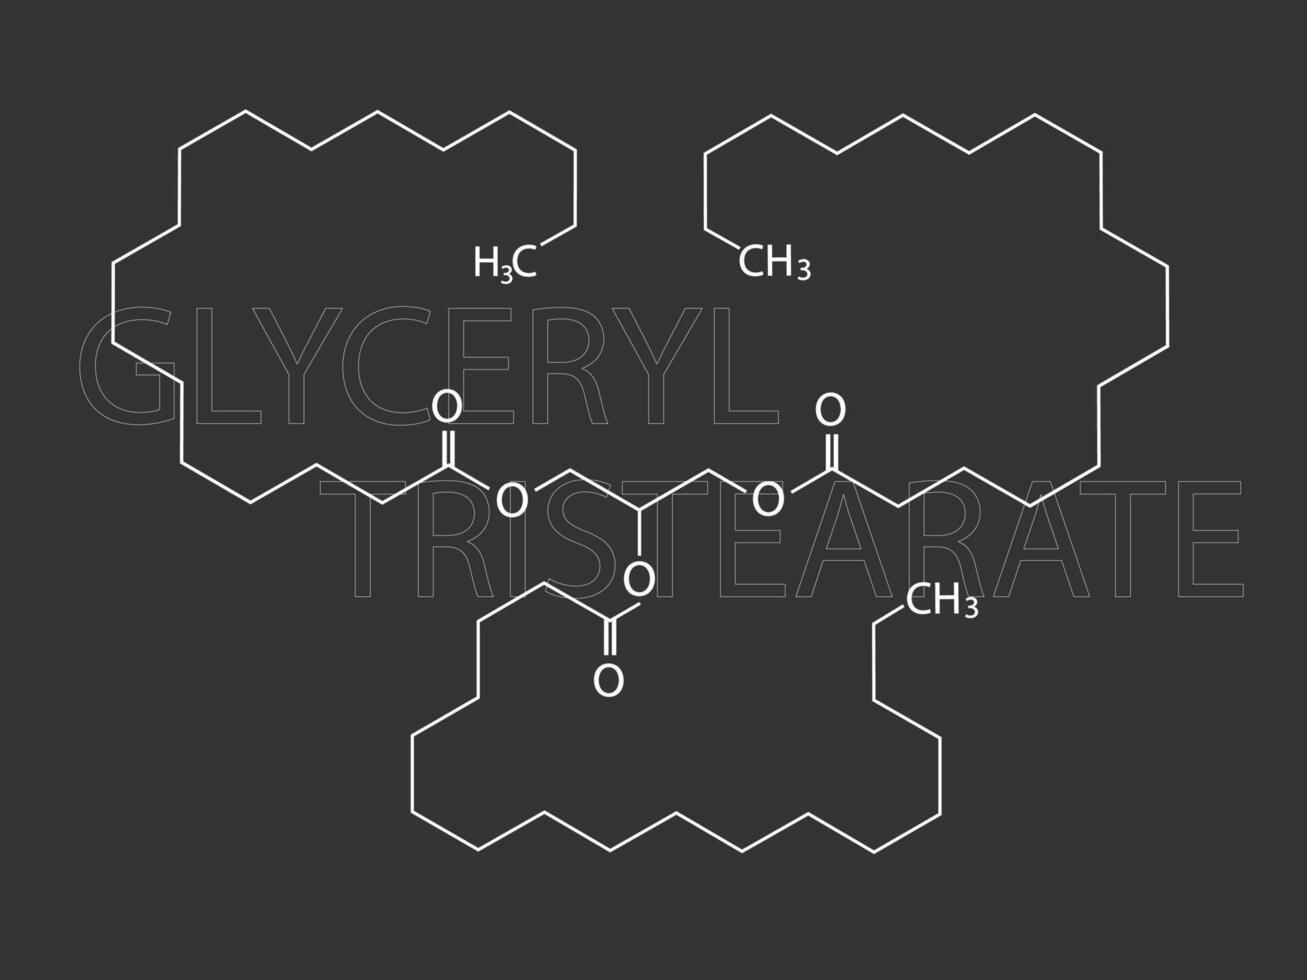 glyceryl tristearat molekyl skelett- kemisk formel vektor